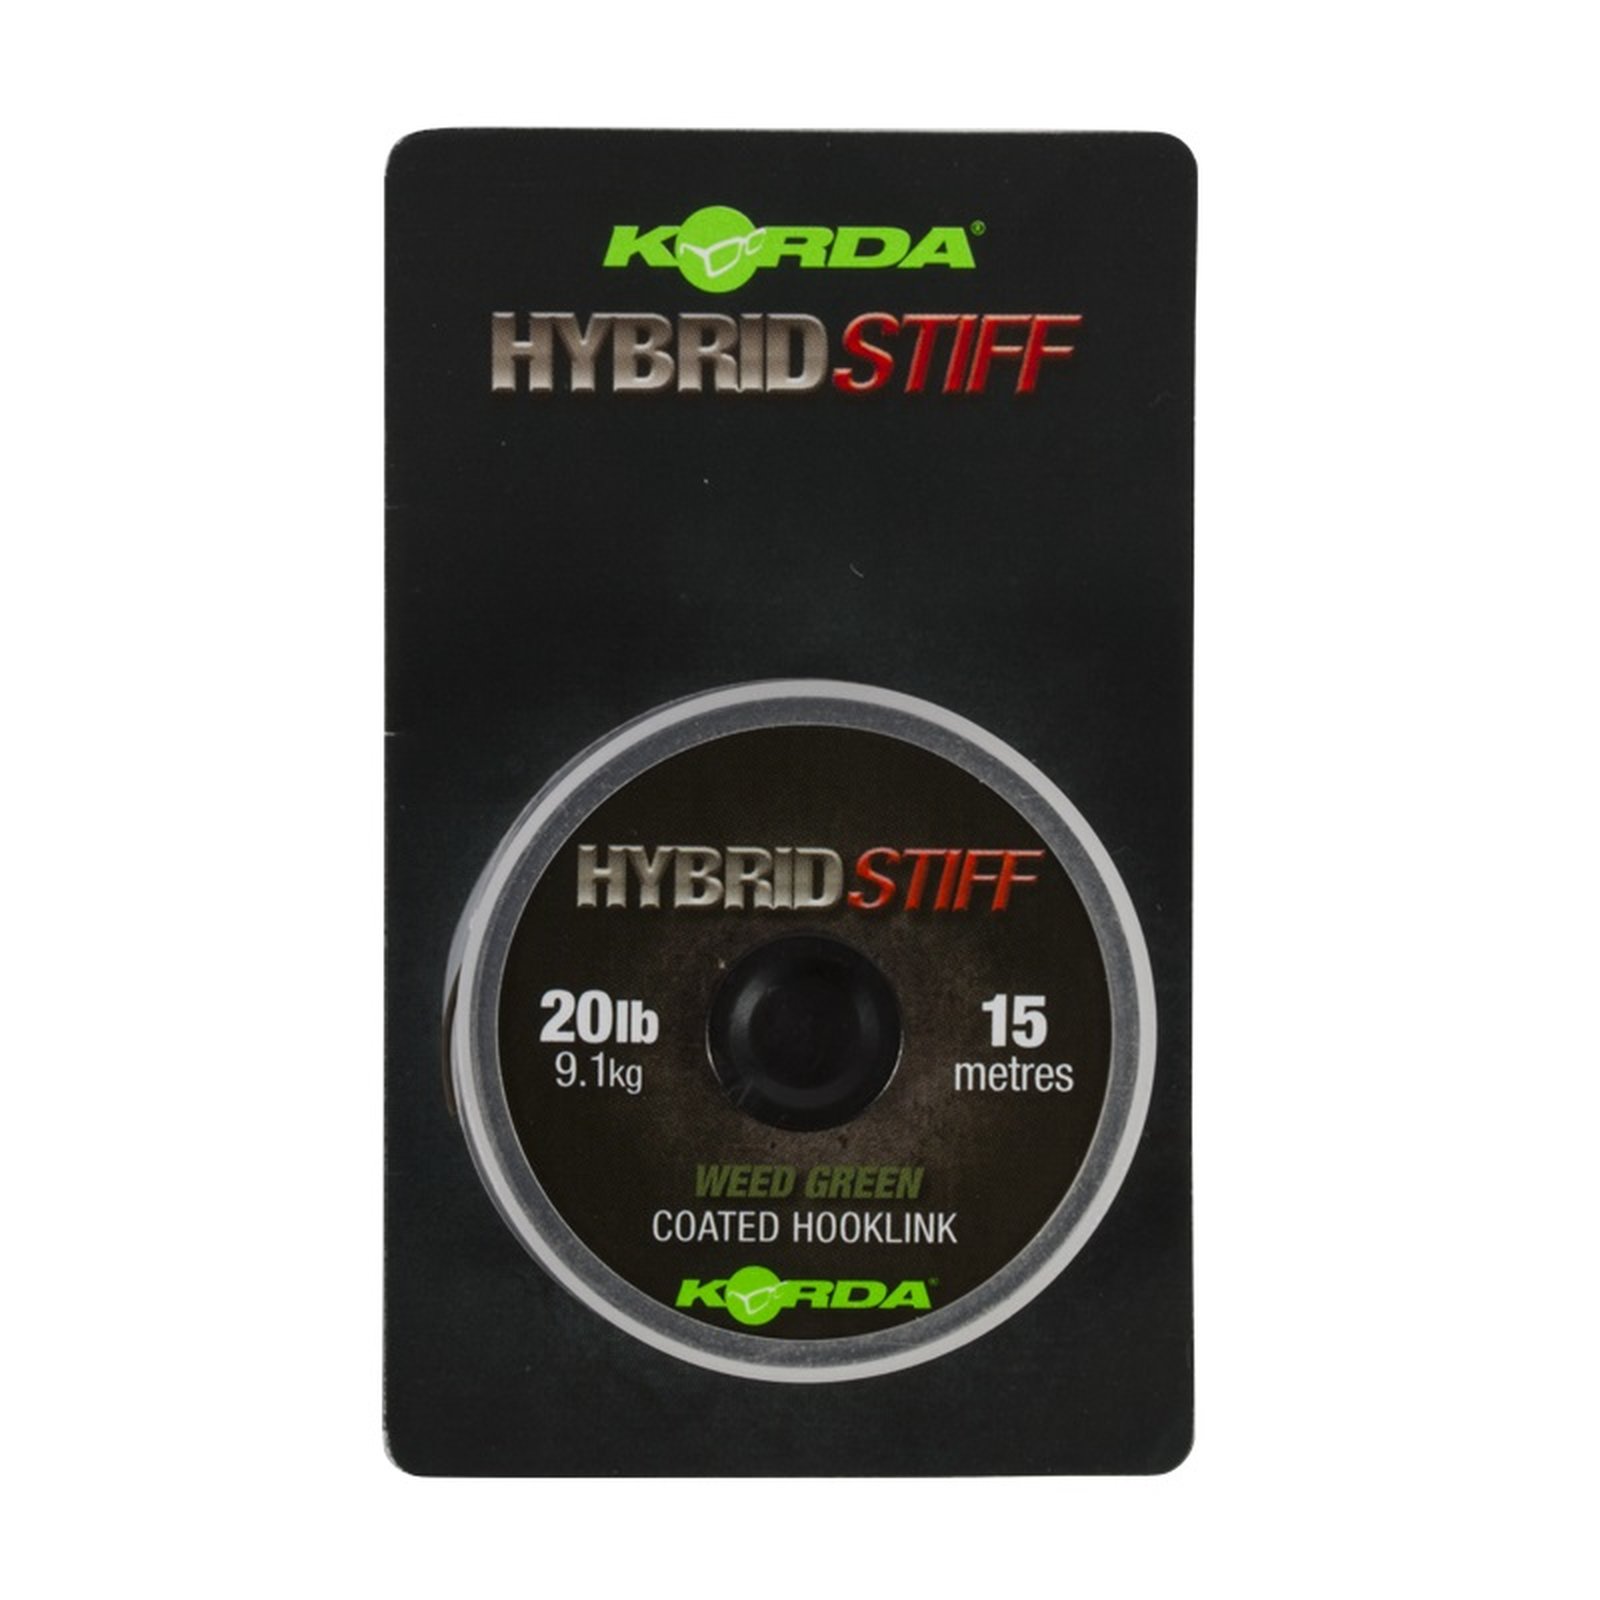 Korda Hybrid Stiff  Weedy green, 20lb - 15m